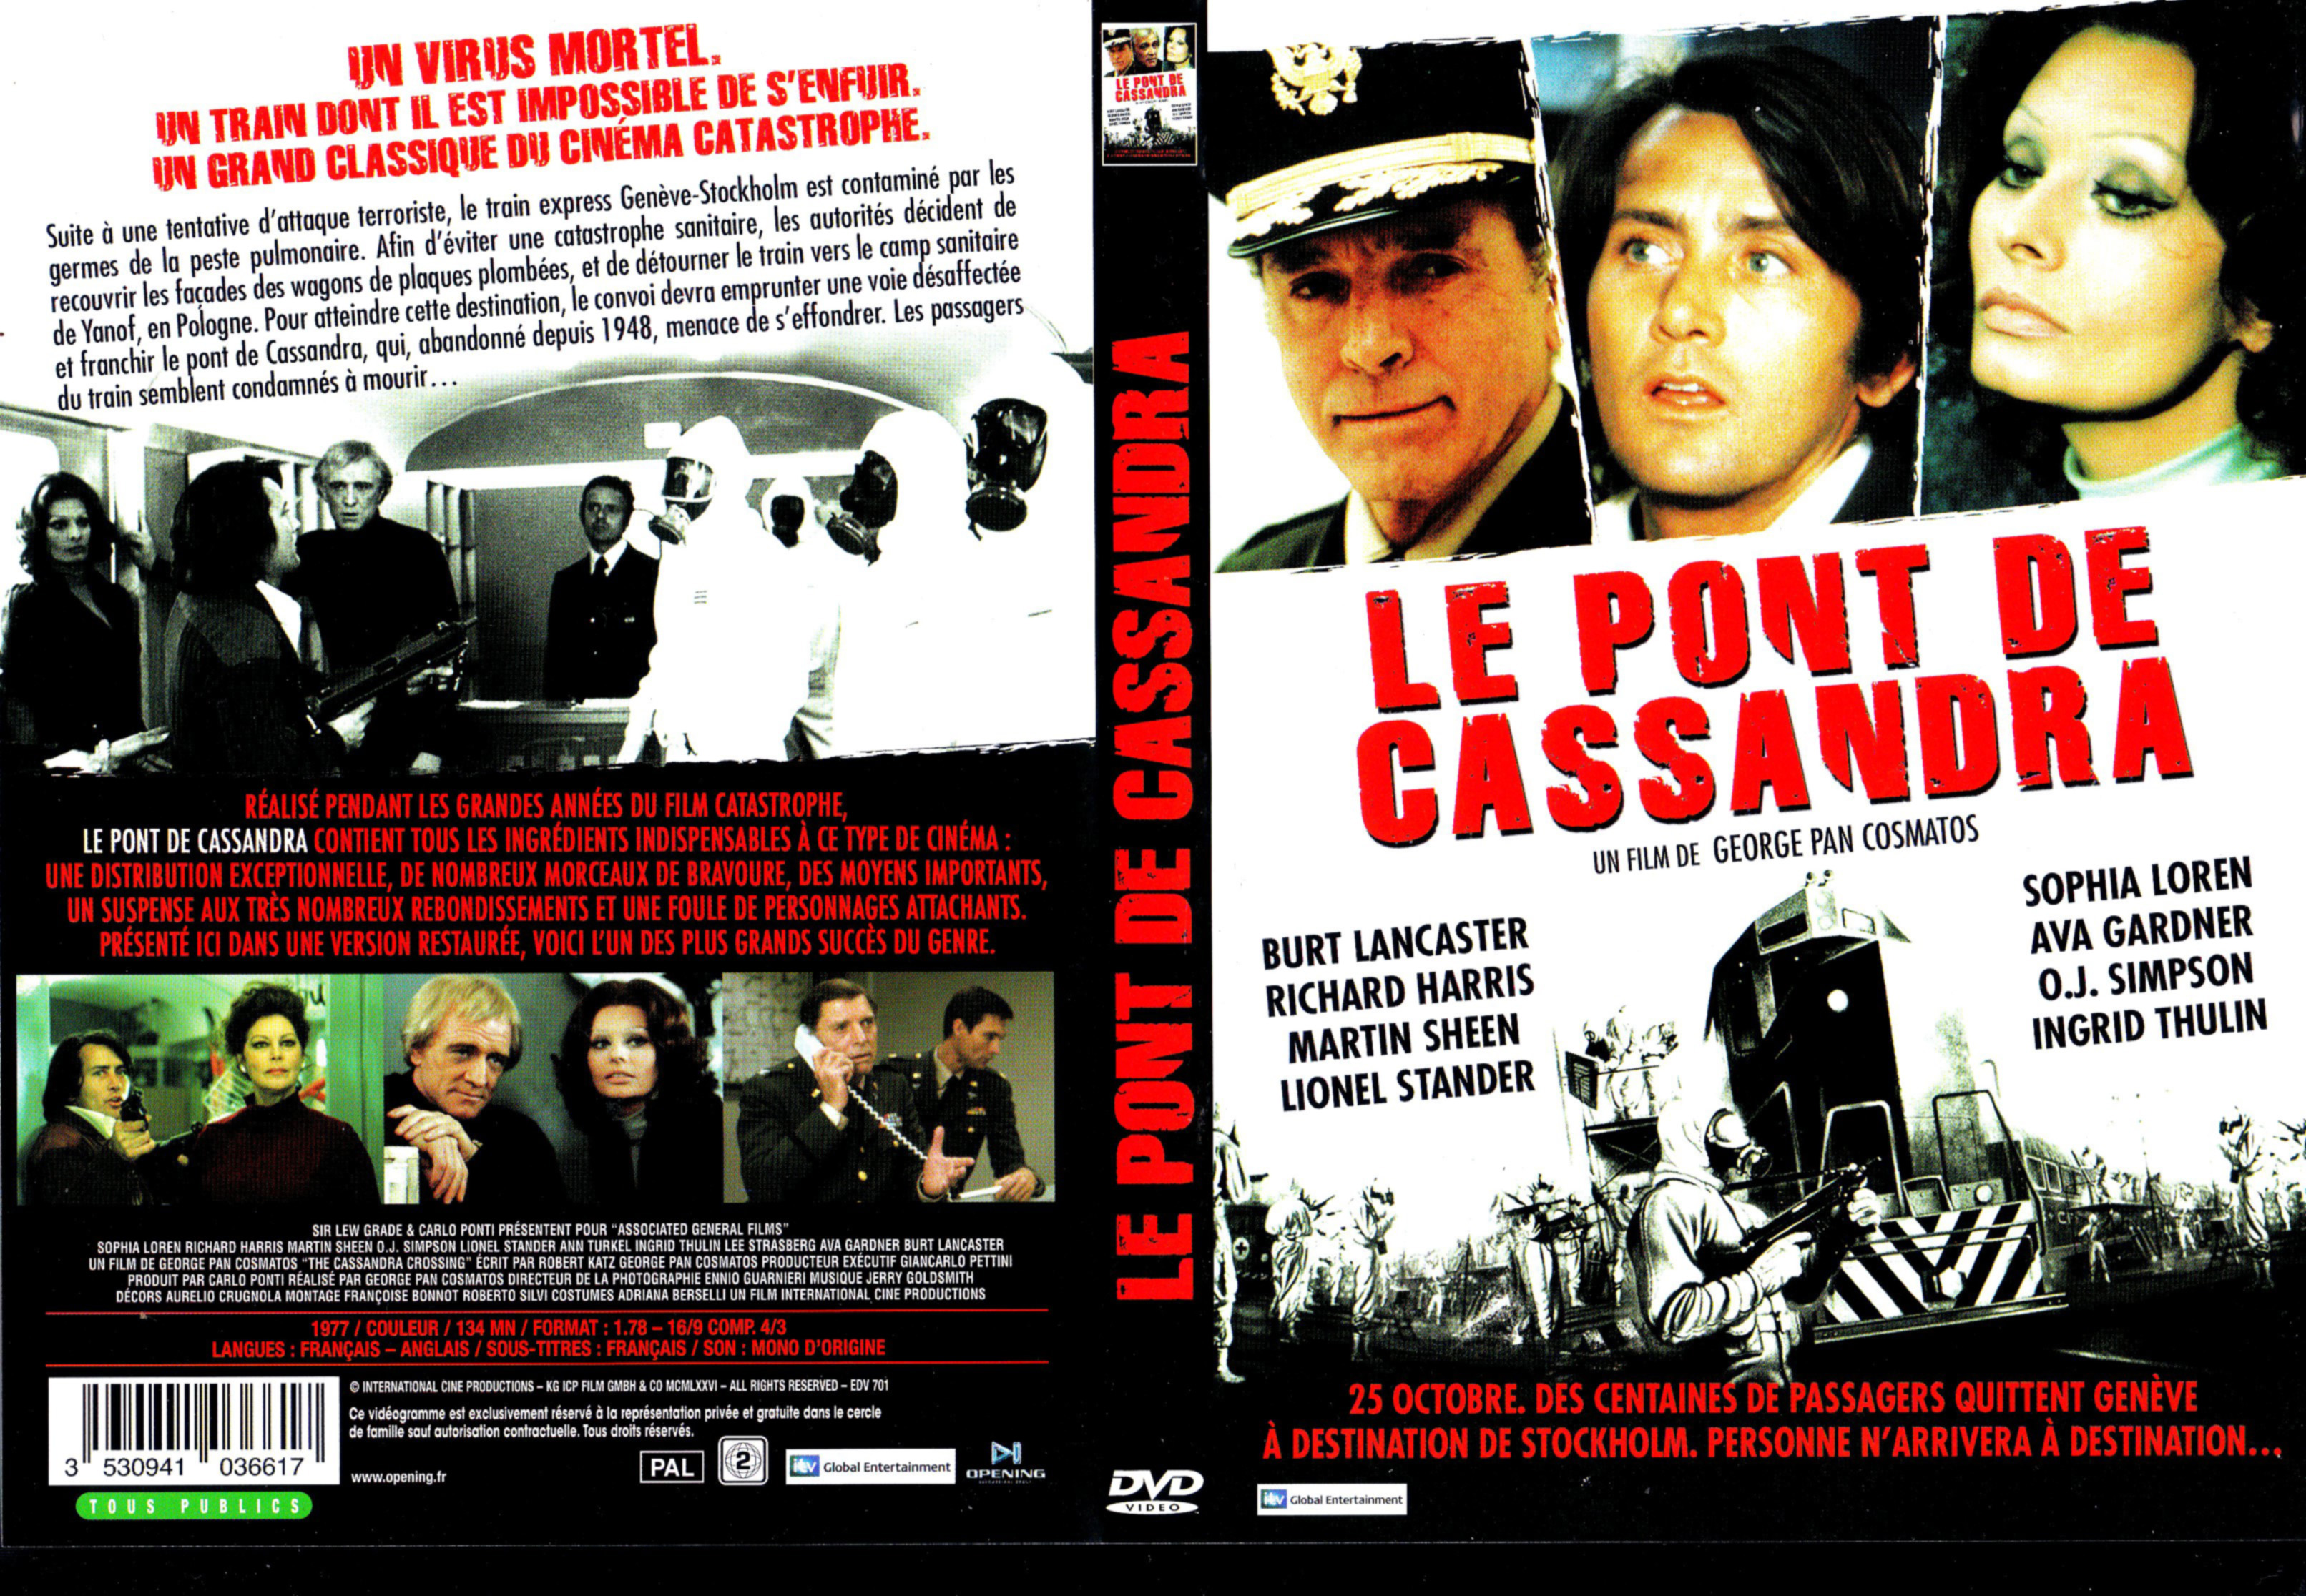 Jaquette DVD Le Pont de Cassandra v2